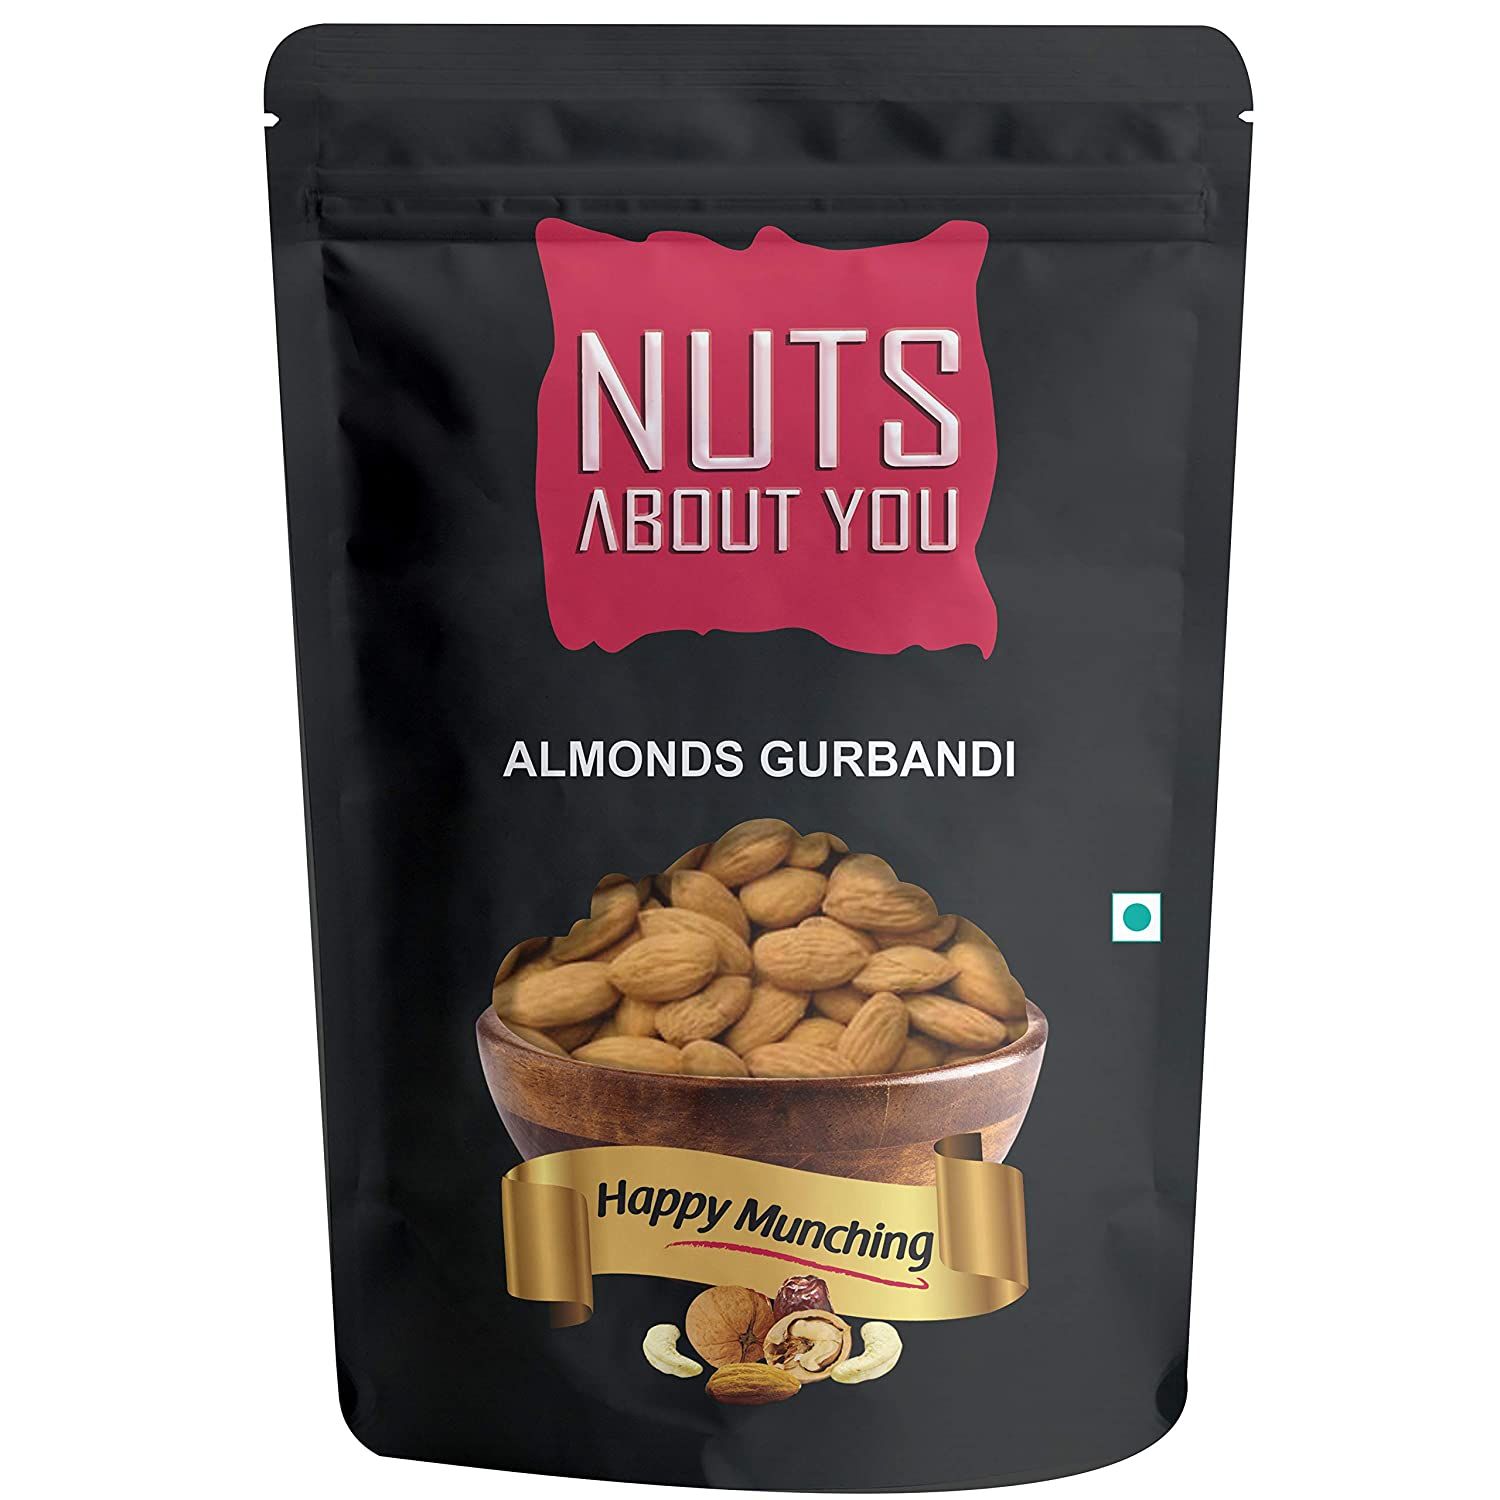 Nuts About You Amlonds Gurbandi Image